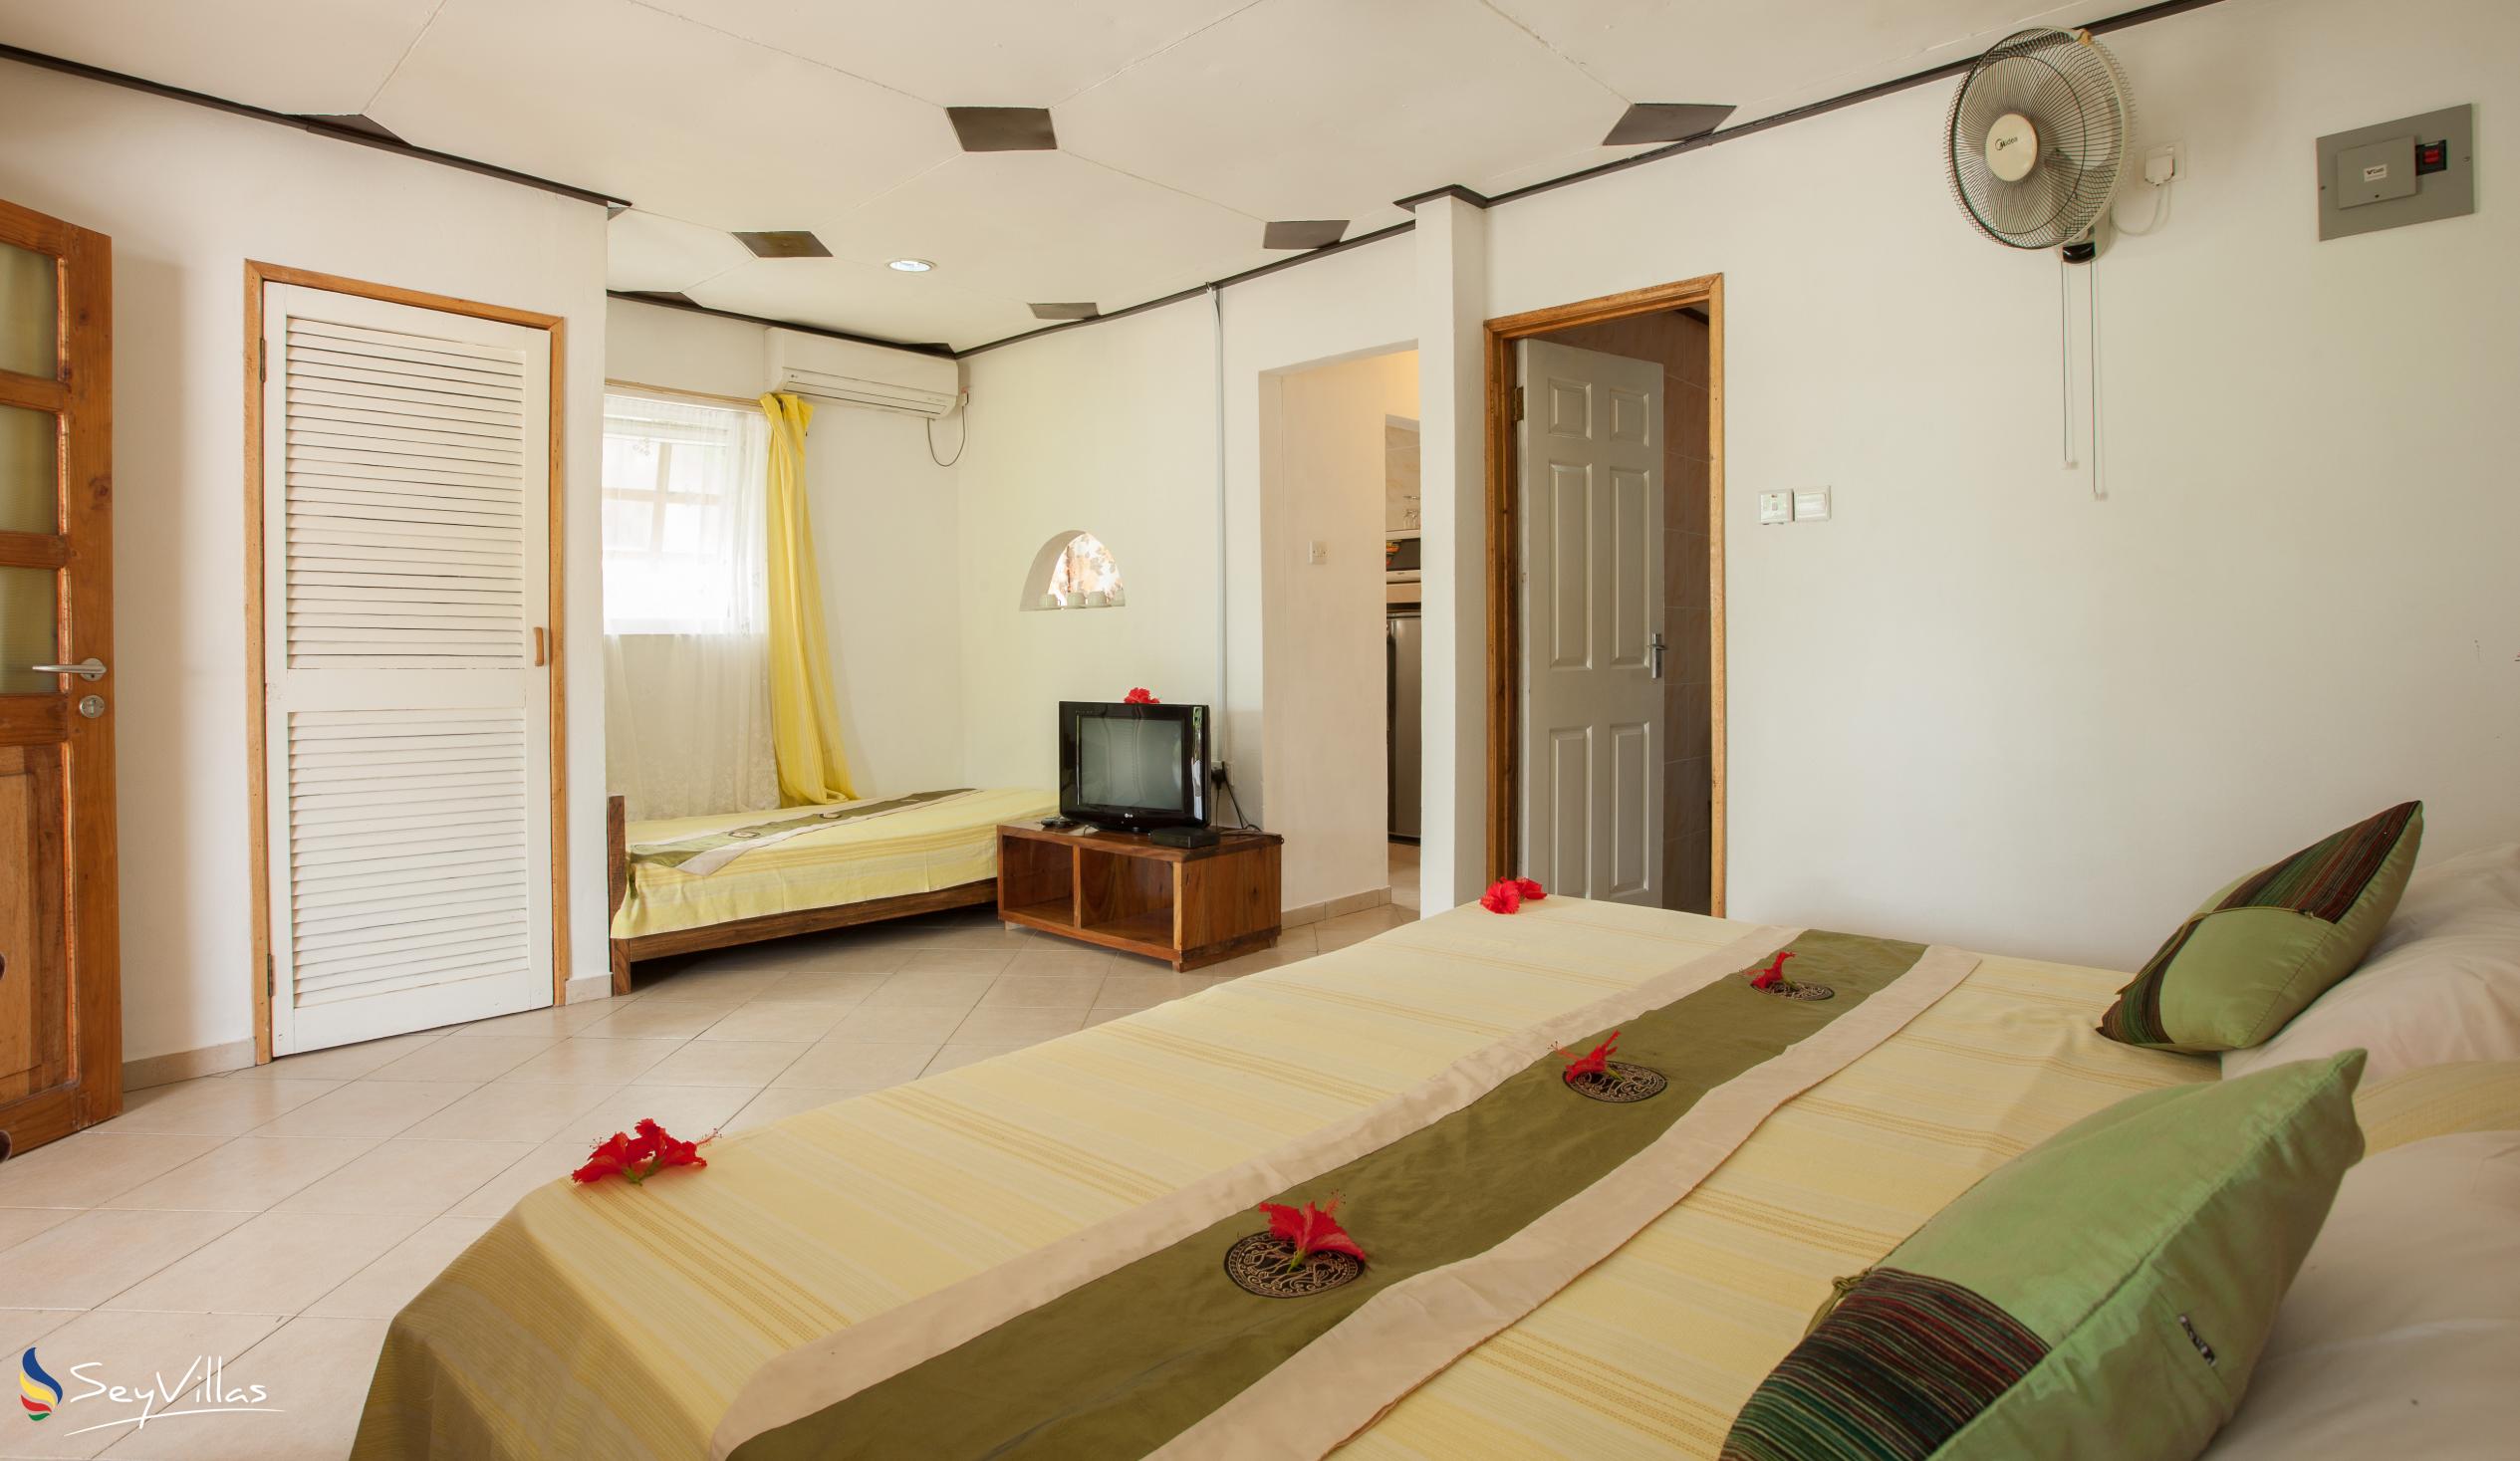 Photo 63: Sea View Lodge - Small Villa - Praslin (Seychelles)